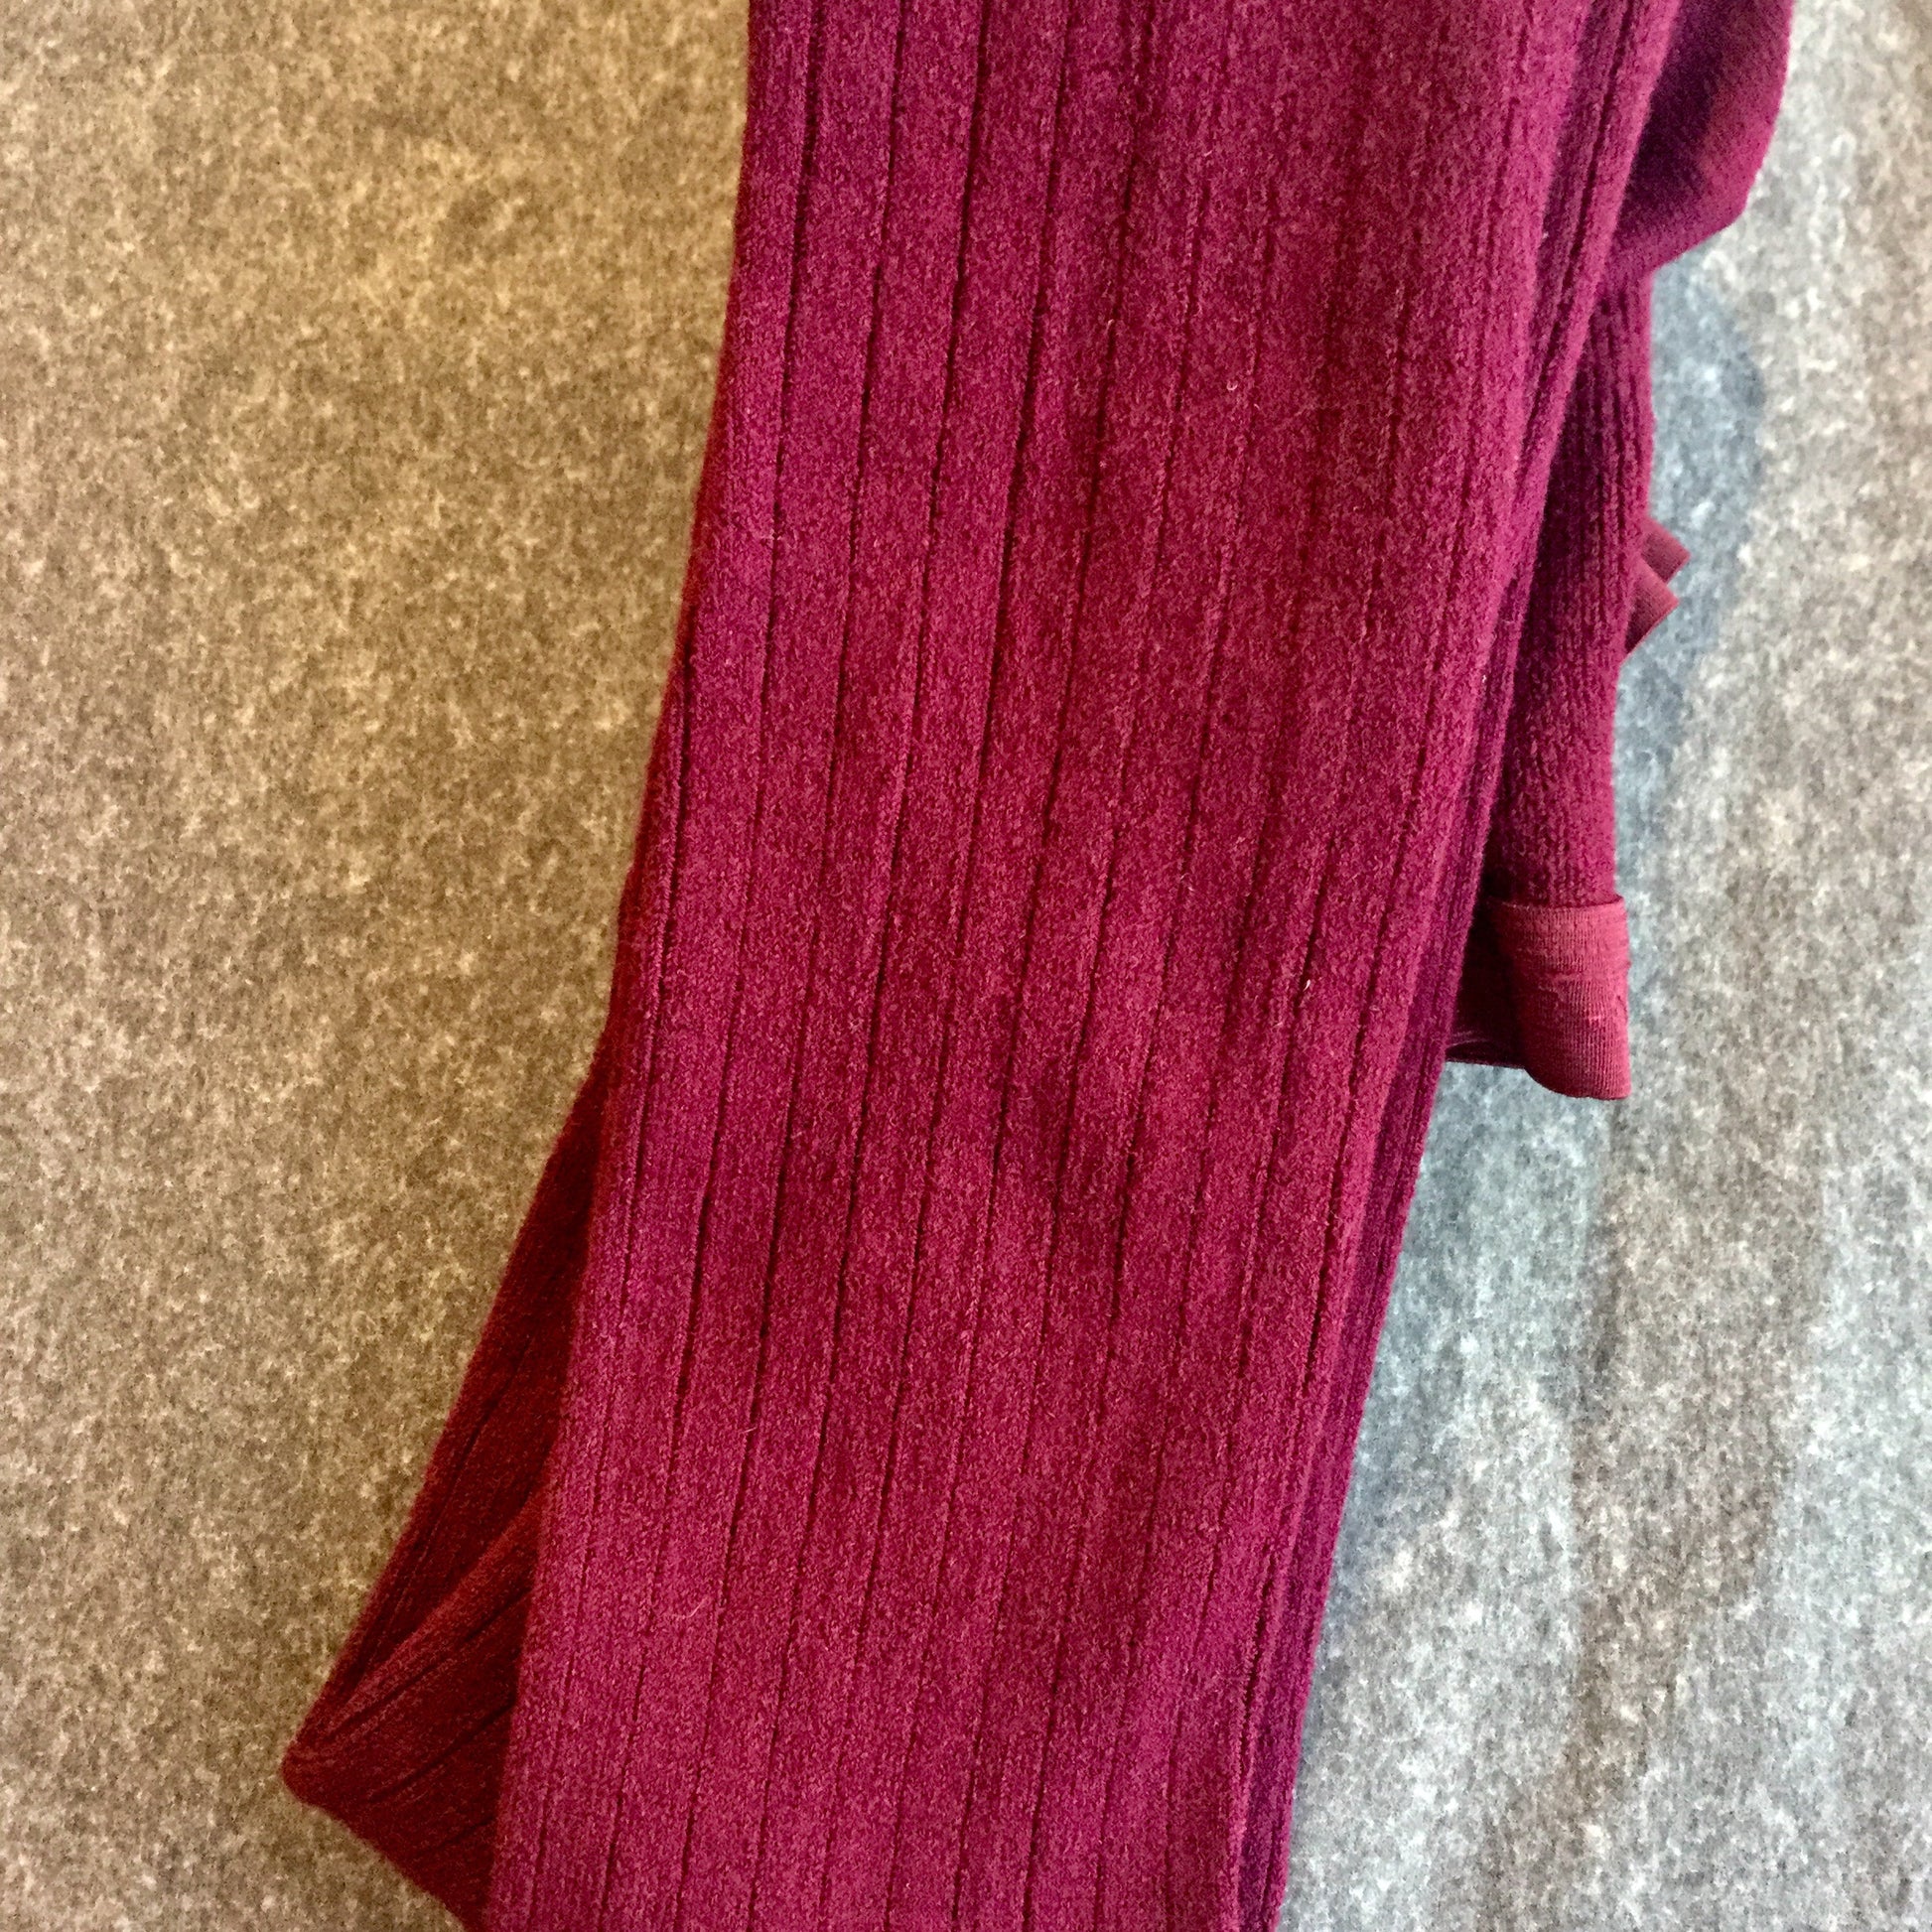 Mondor Footed Merino Wool Herringbone Tights - 5 Colors